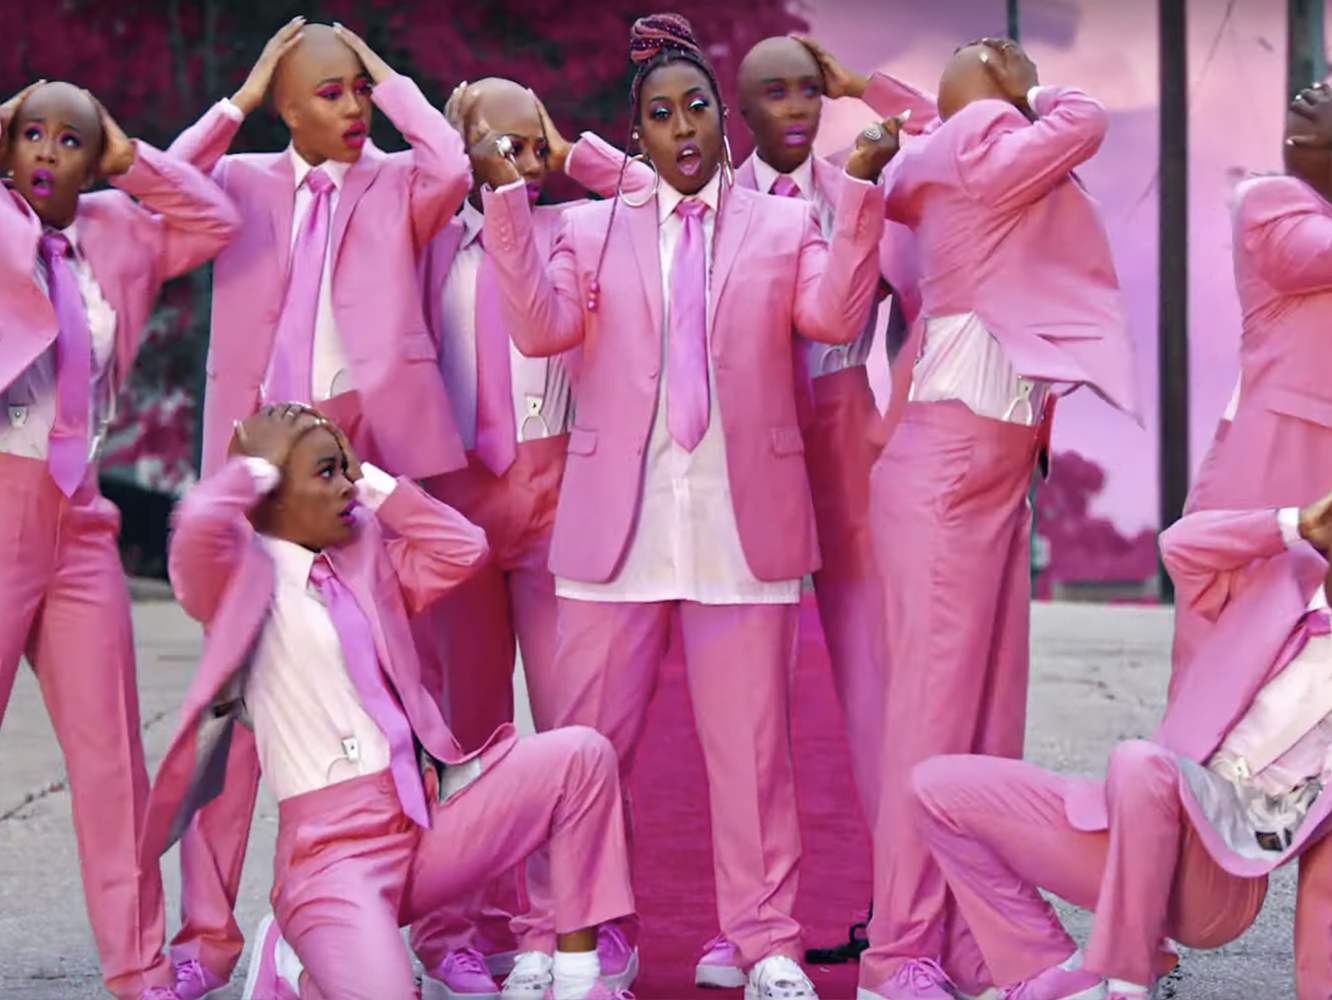  Missy Elliott vuela las pelucas de sus bailarinas en ‘Throw It Back’, no tanto las nuestras